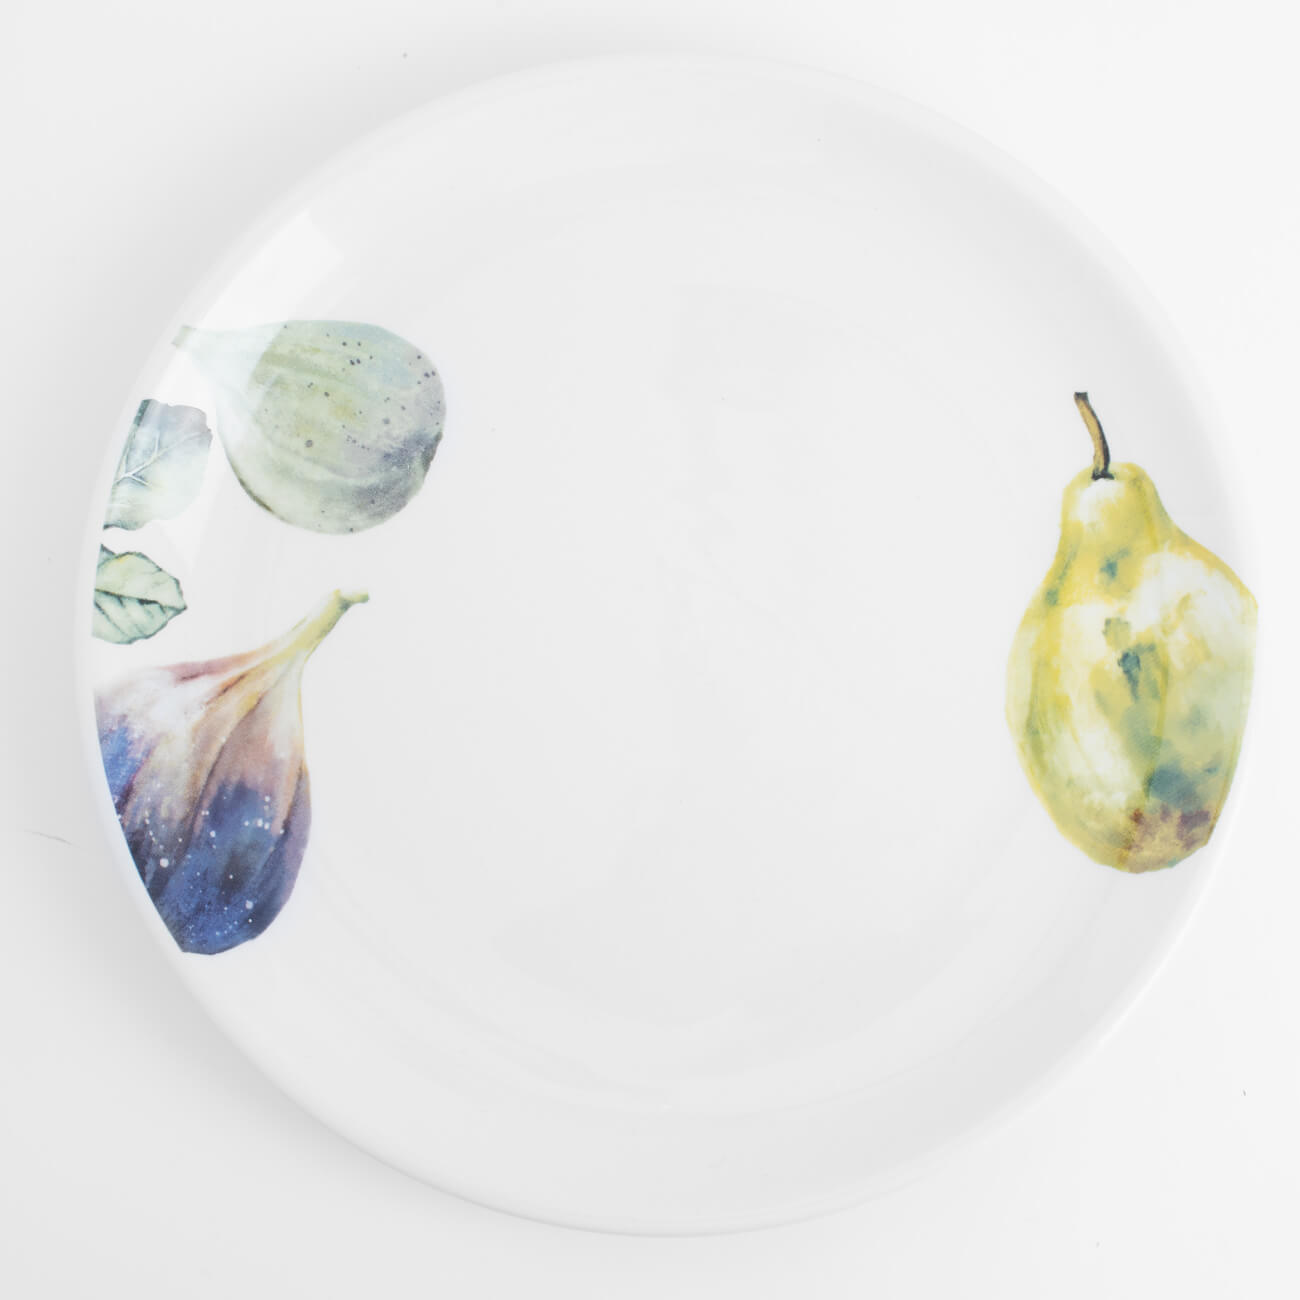 Тарелка закусочная, 21 см, керамика, белая, Инжир и груша, Fruit garden тарелка для сортировки с пинцетом